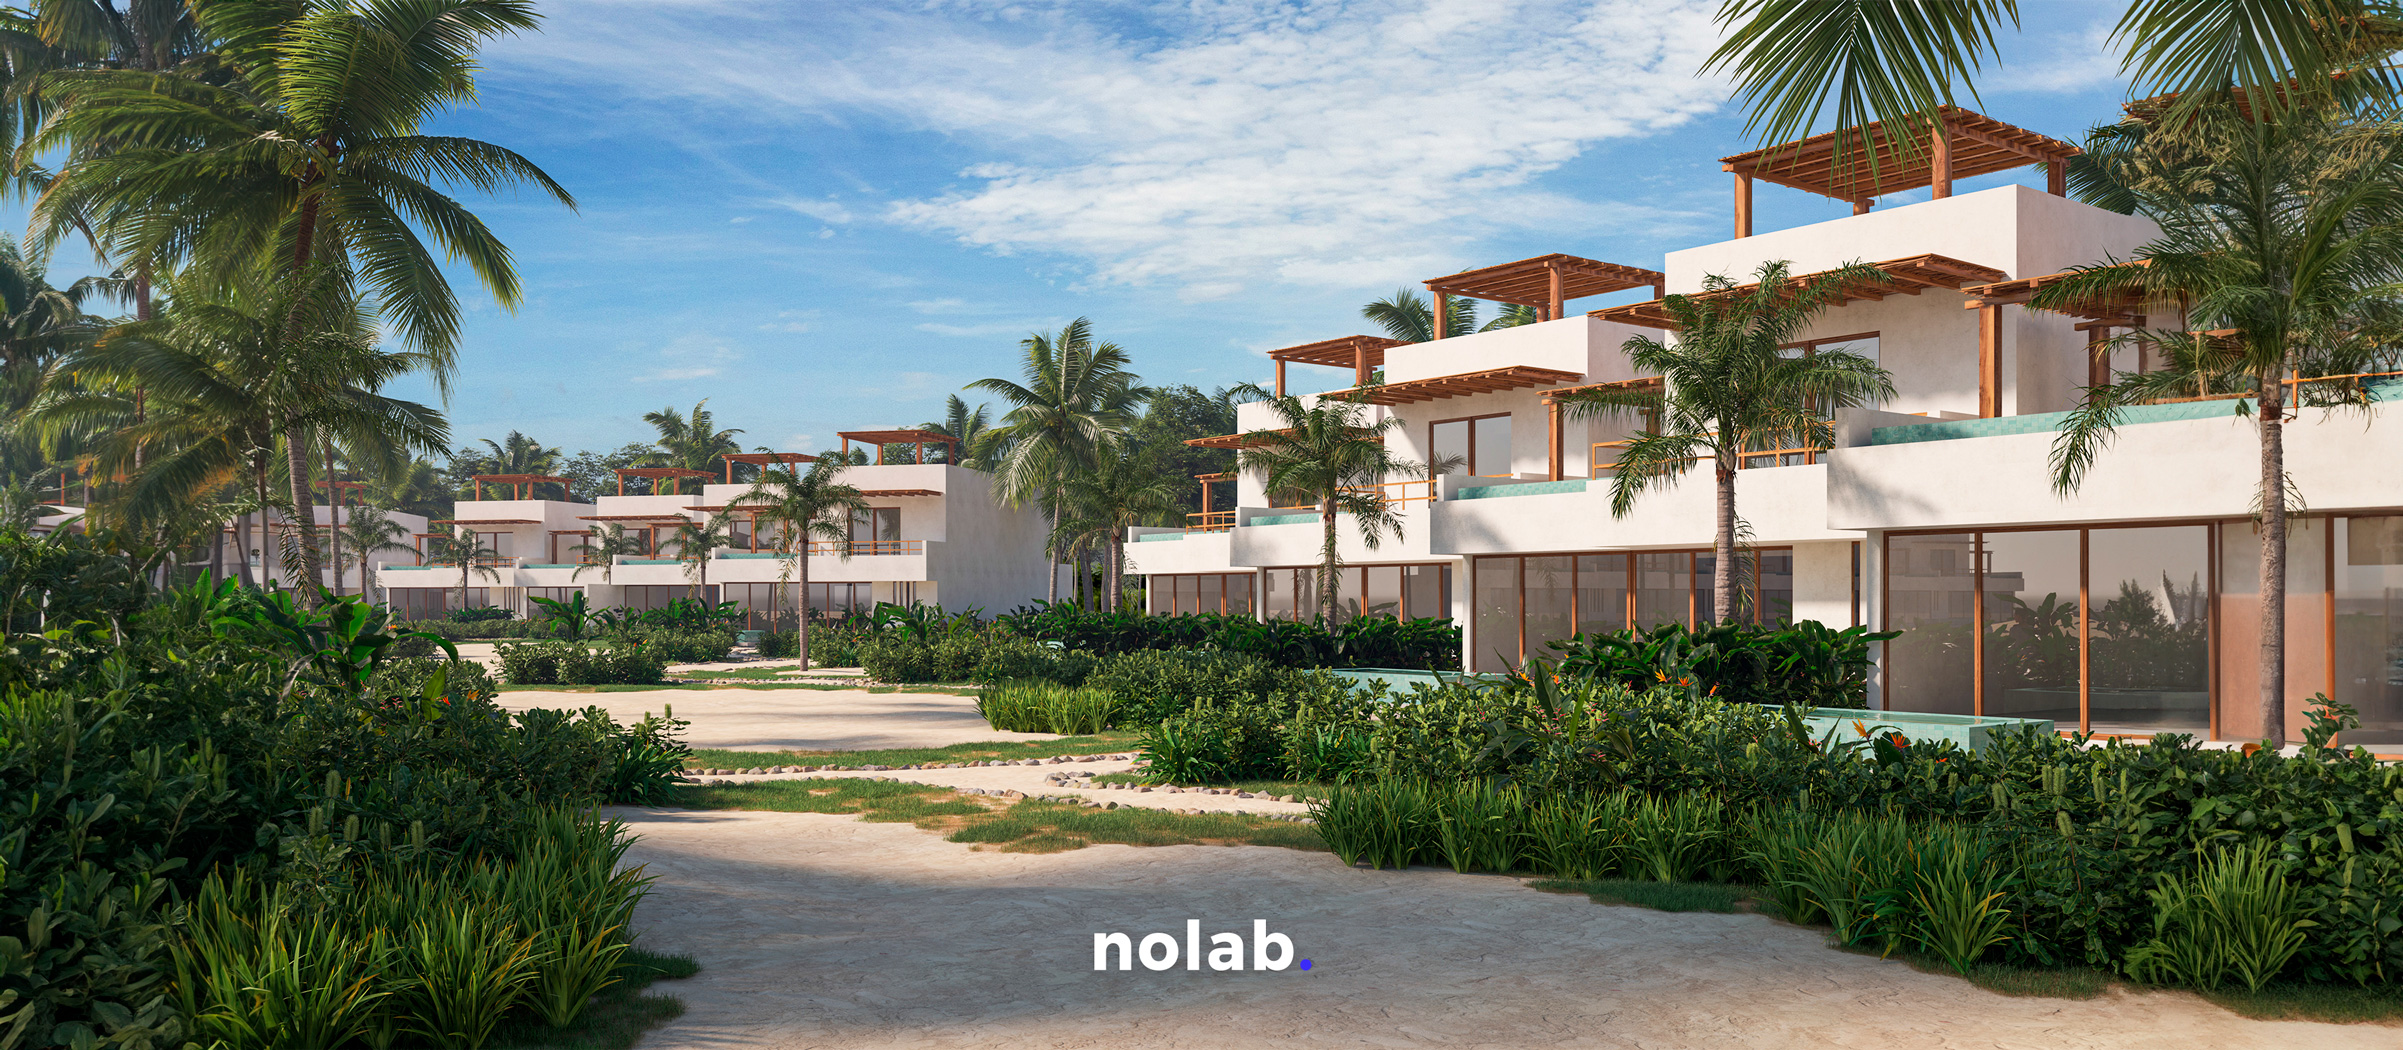 Principales ventajas de invertir en lotes residenciales de lujo en México - Nolab.